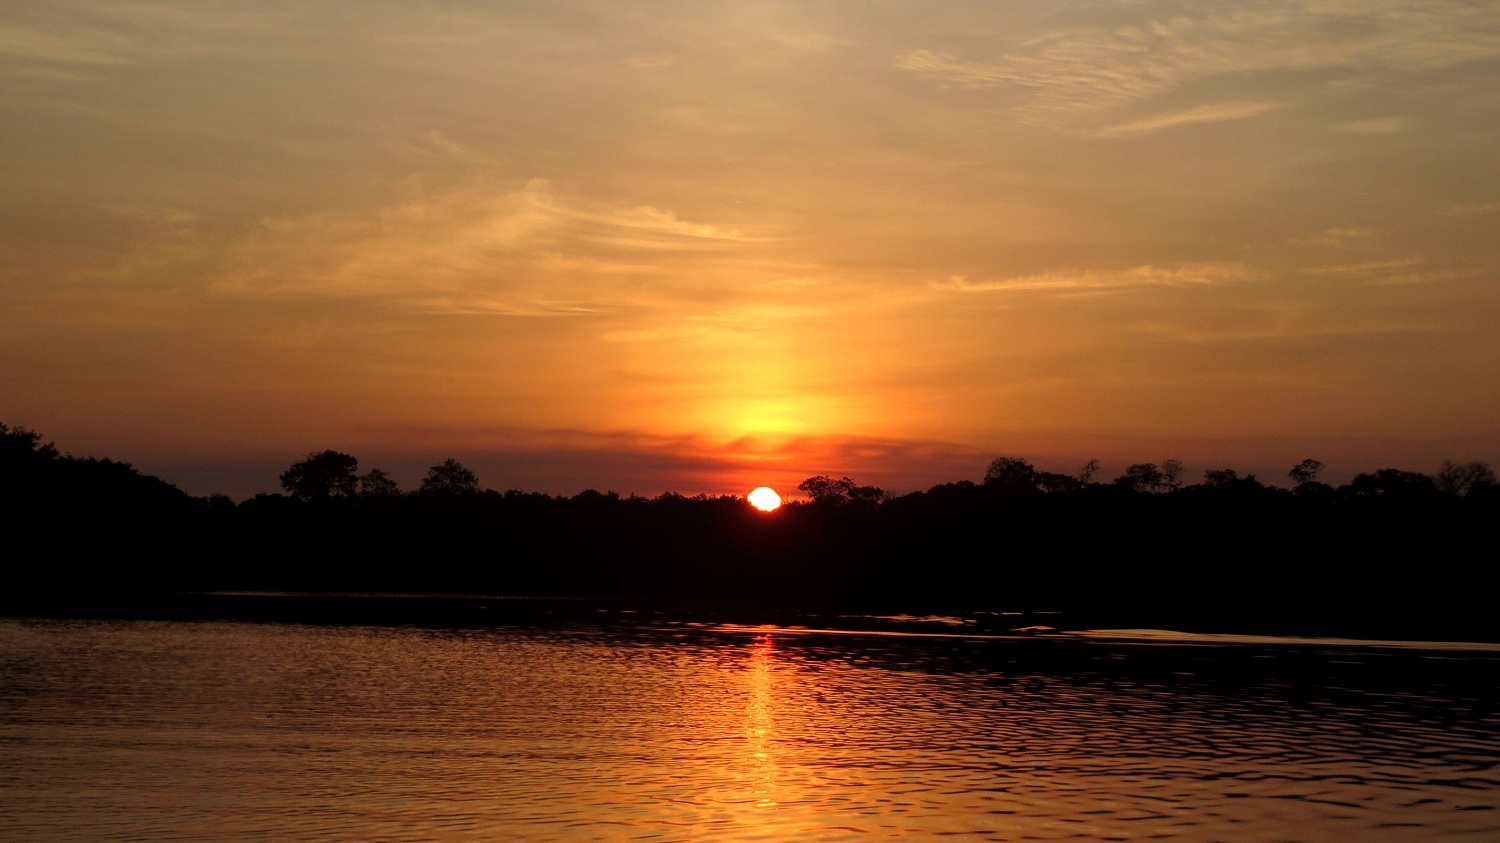 Imagen de una puesta de sol con los colores amarillo y naranja, al fondo un río con aguas oscuras, donde se refleja la luz del sol.